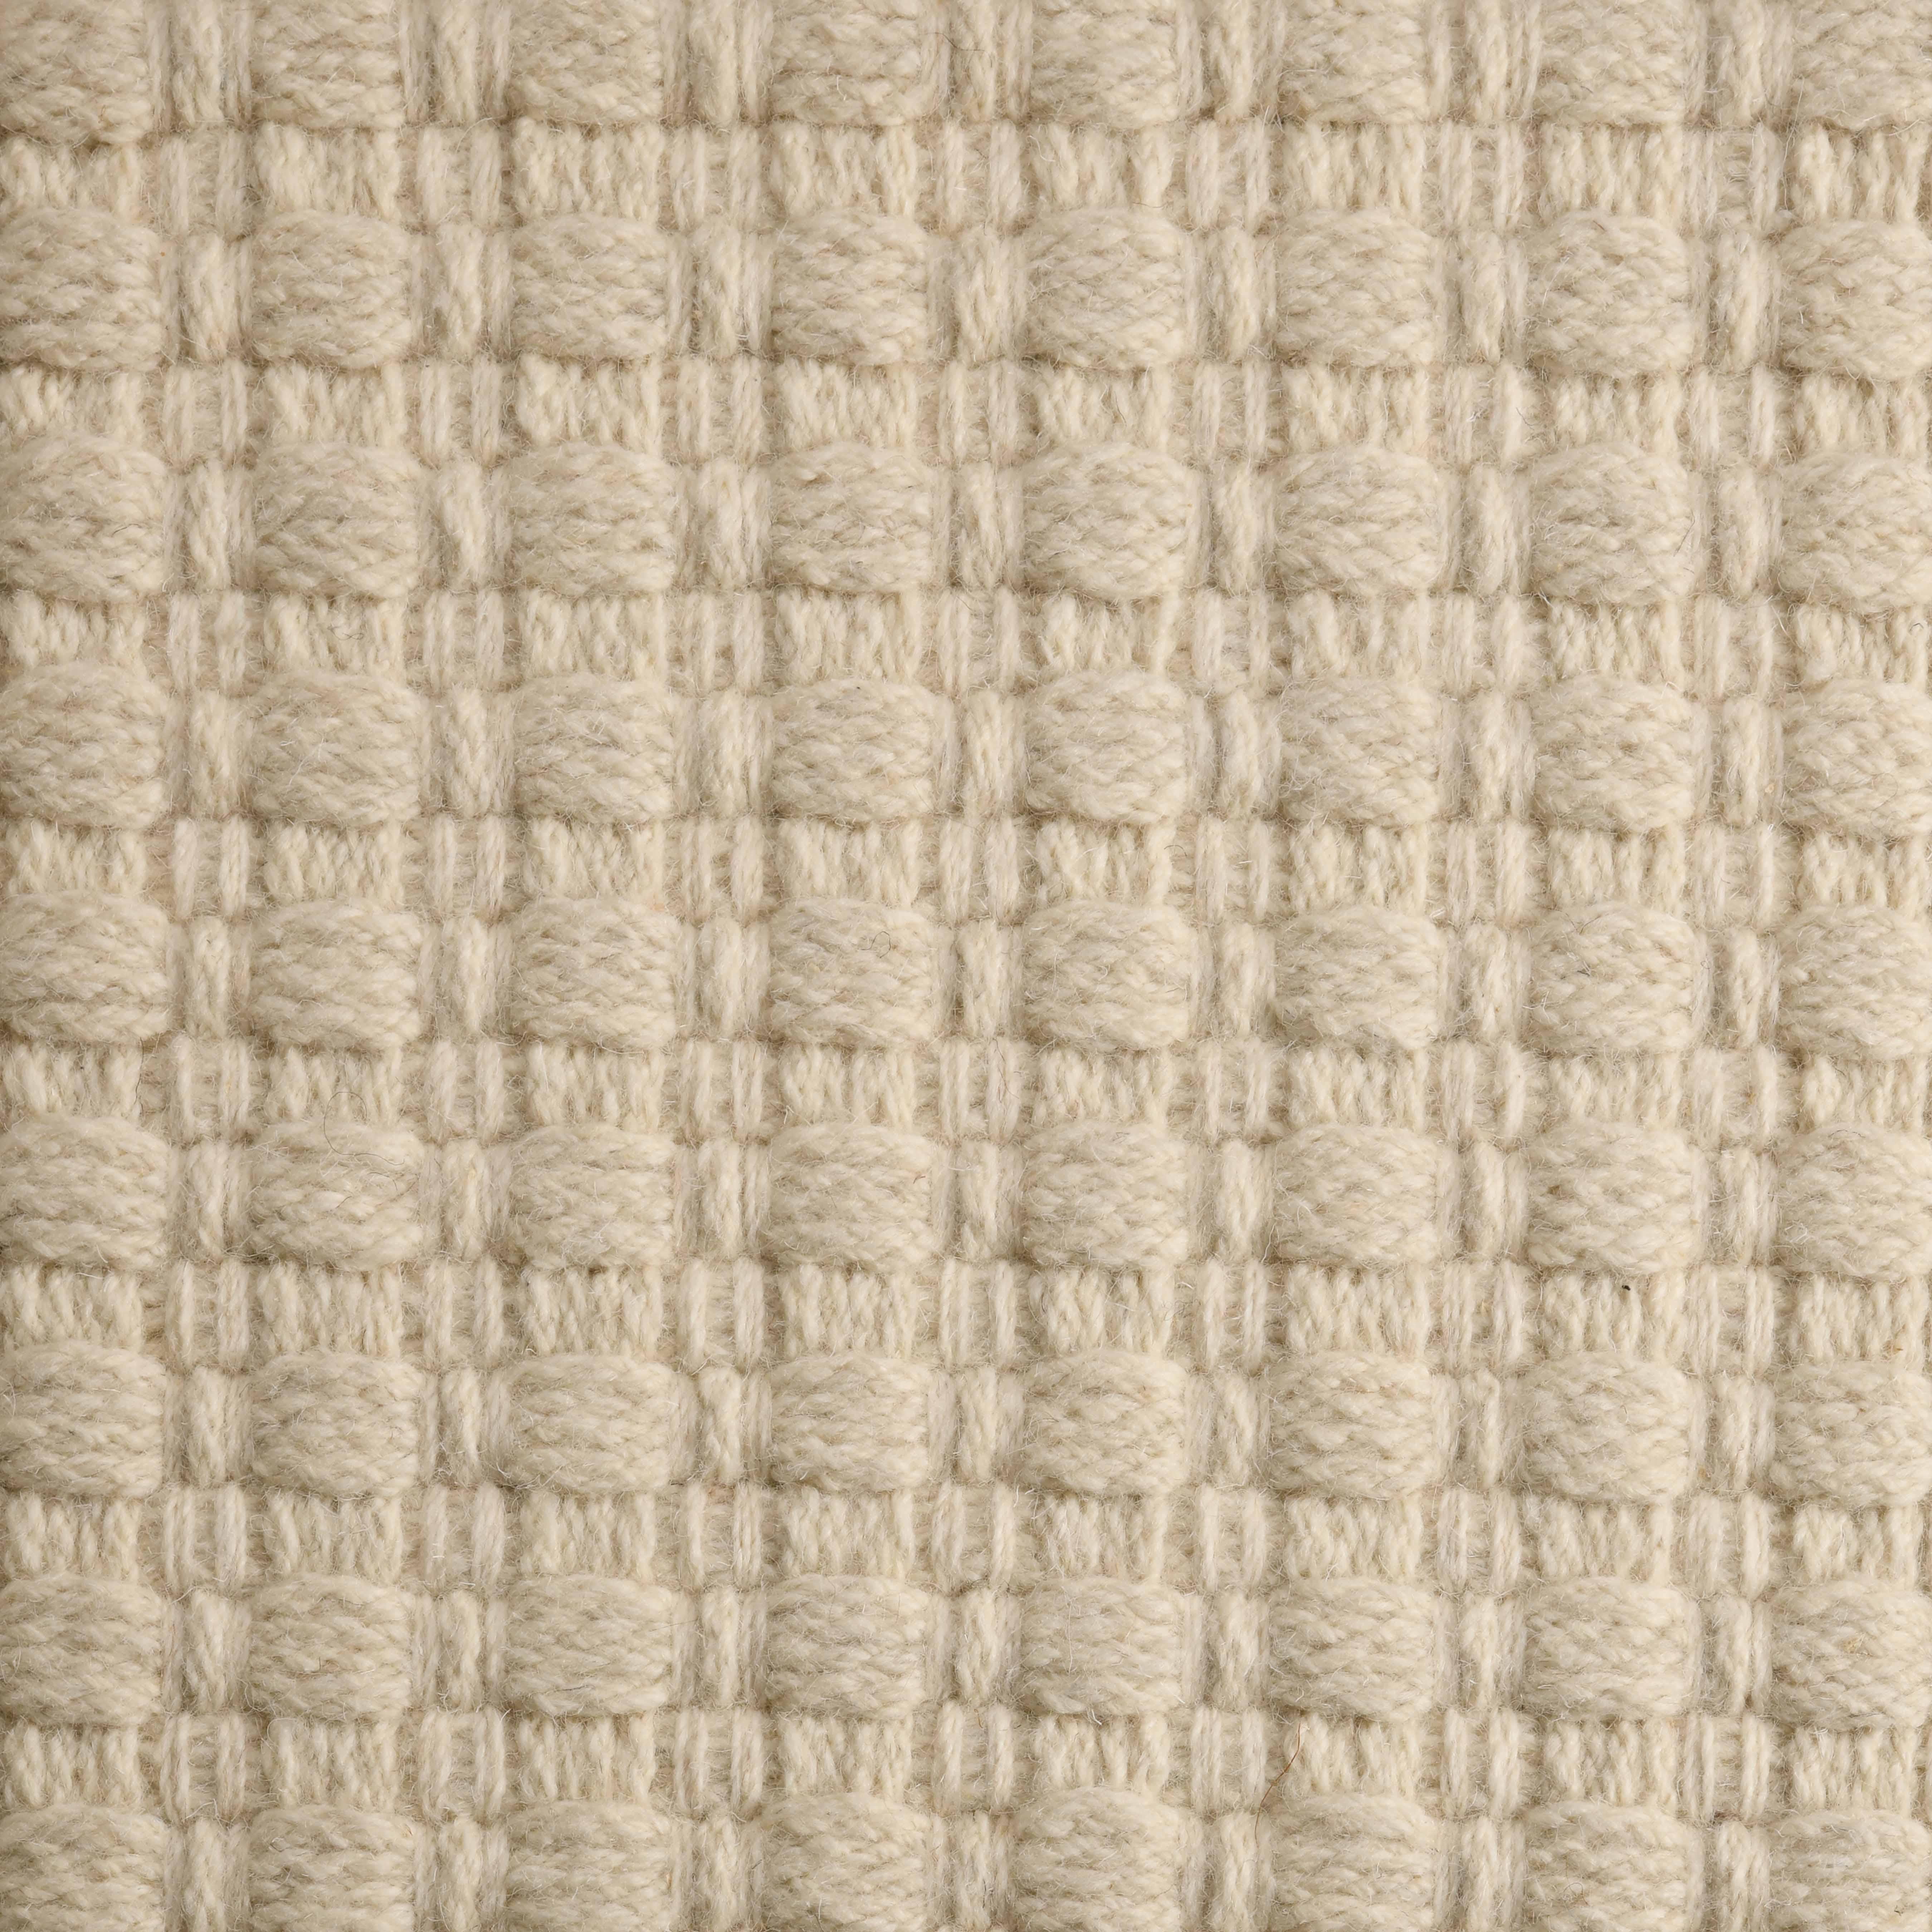 Una, Ecru, Handwoven Face 60% Undyed NZ Wool, 40% Undyed MED Wool, 6' x 9'